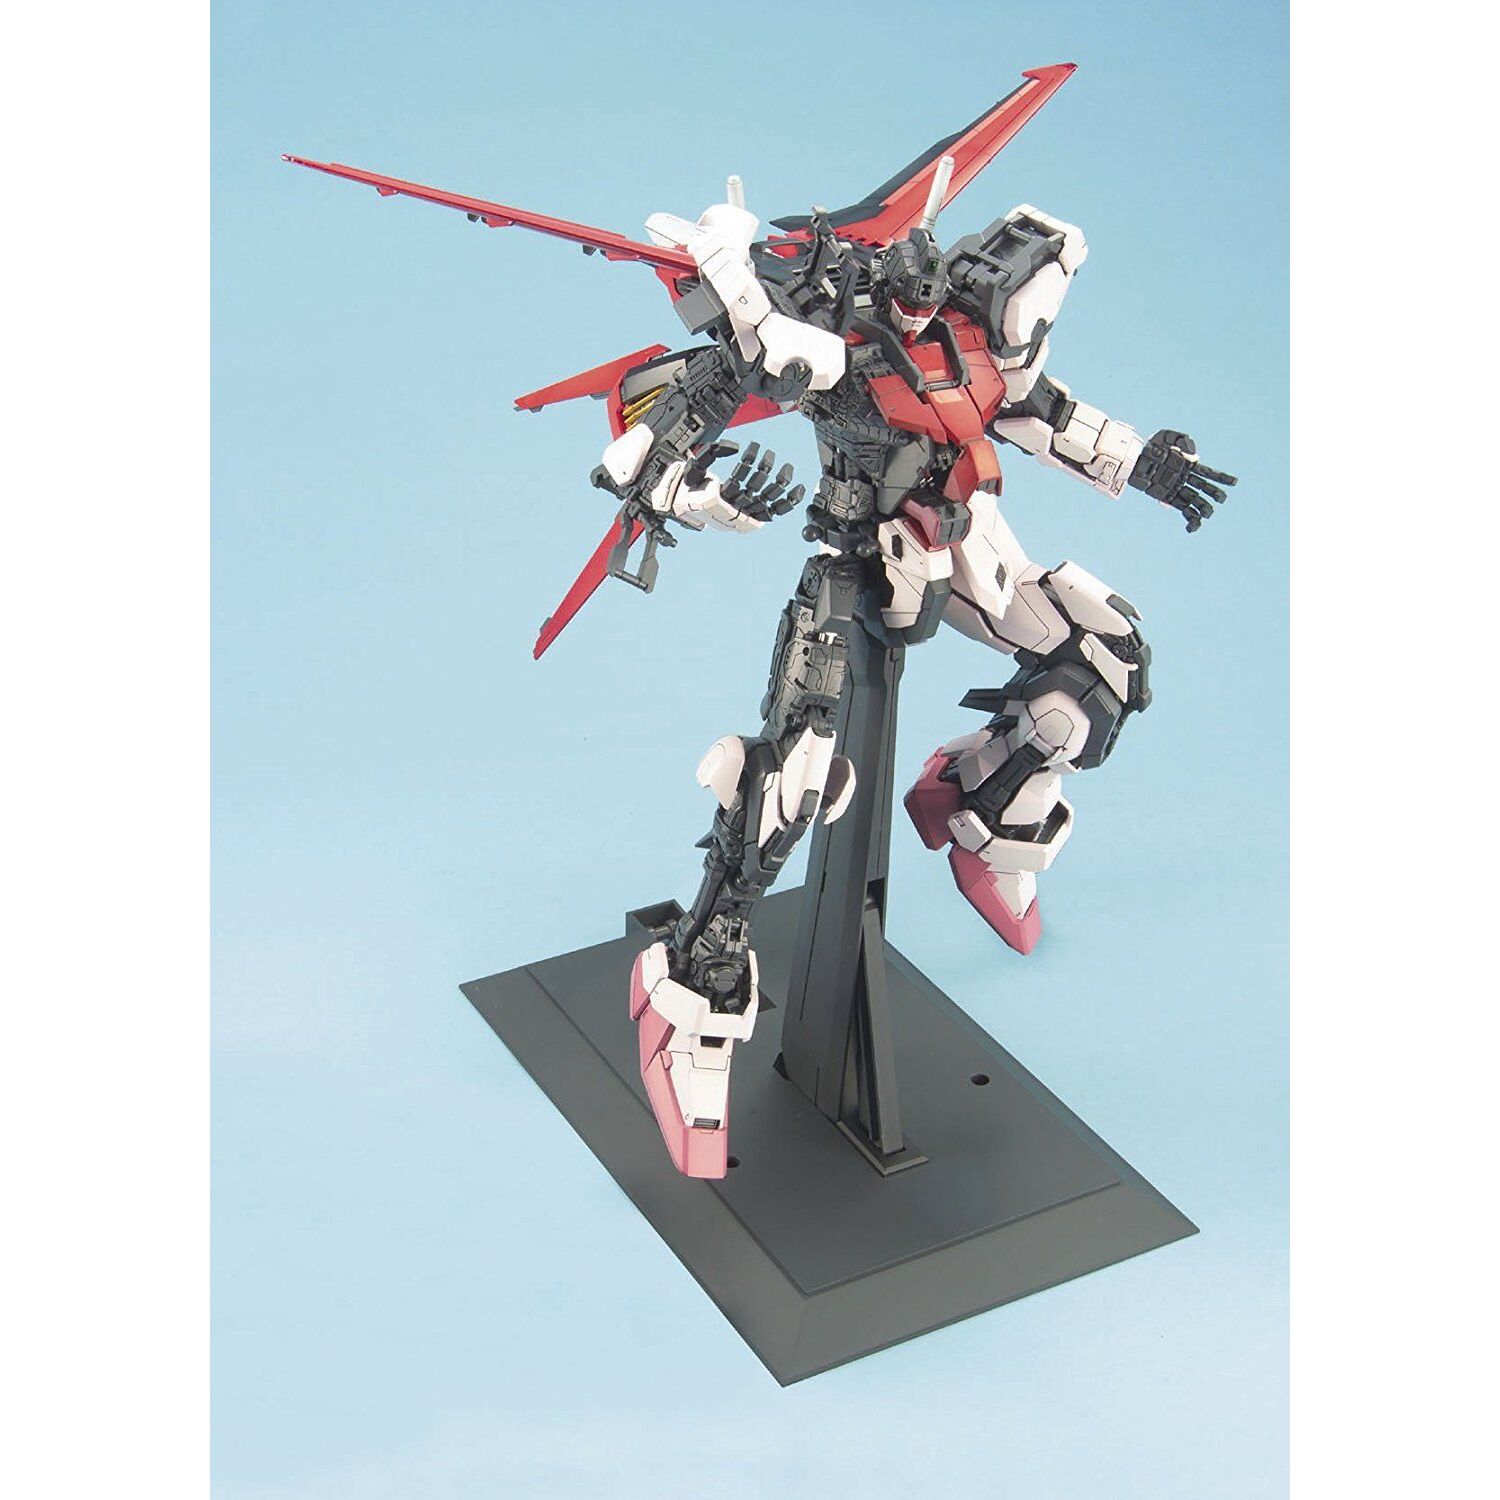 MBF-02 Strike Rouge + FX-550 Skygrasper Mobile Suit Gundam Seed Destiny PG 160 Scale Model Kit (3)